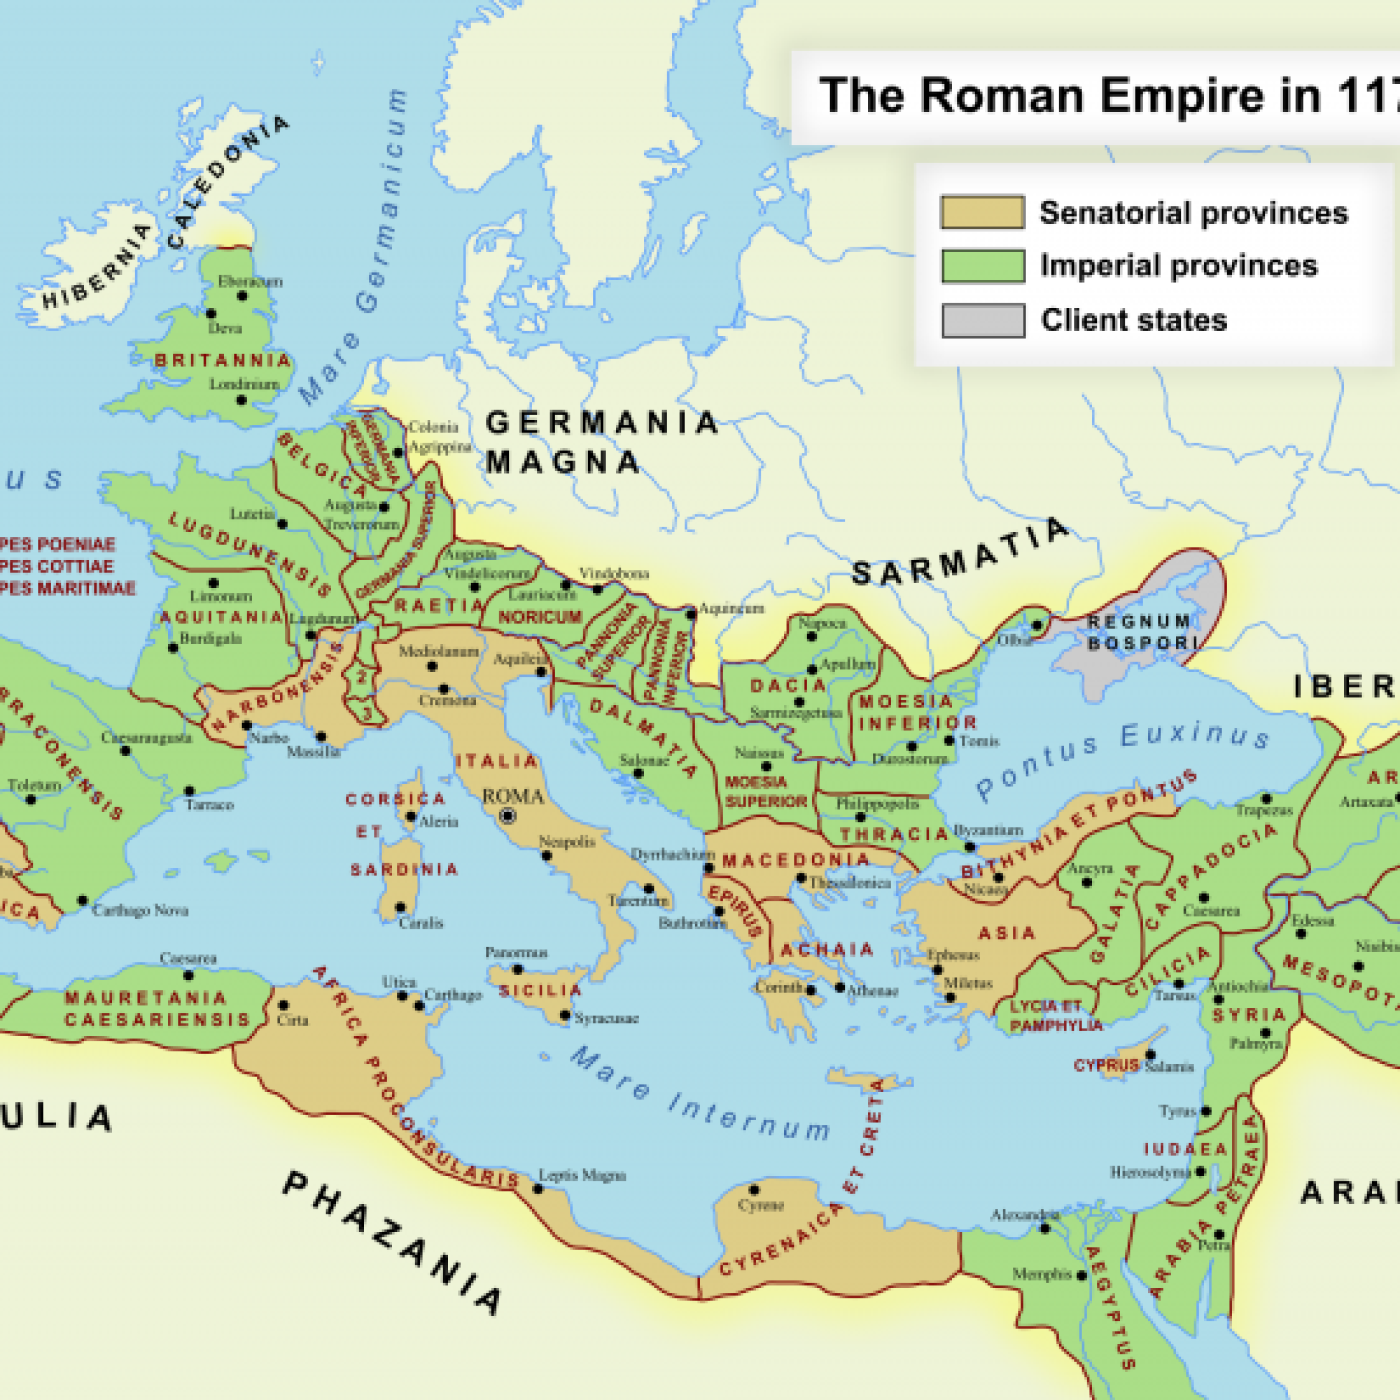 The Roman Empire 